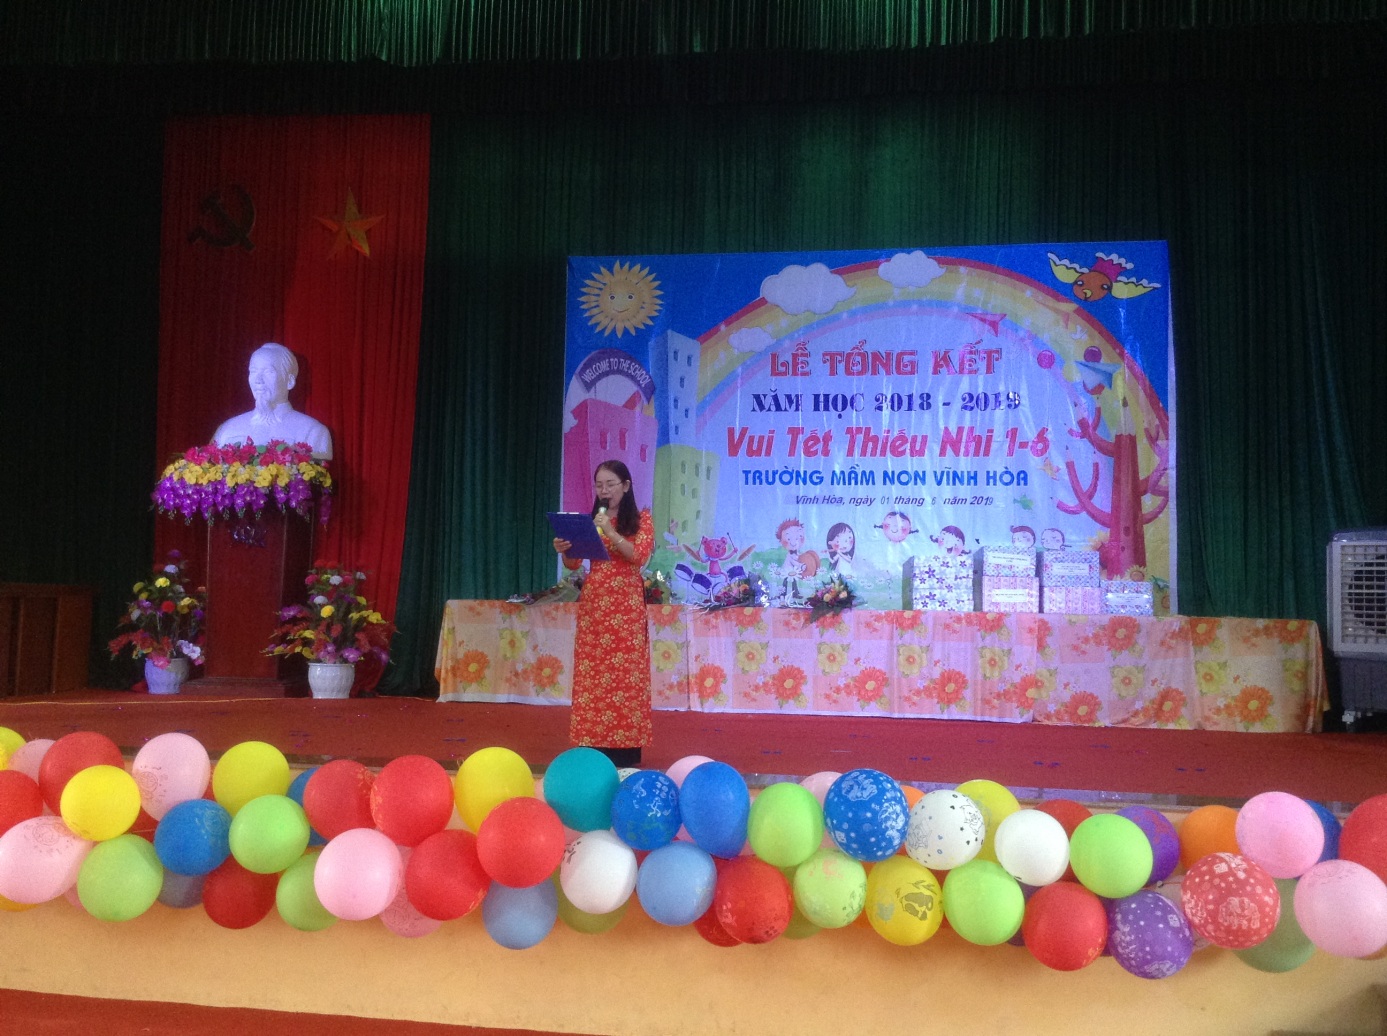 Bà Phạm Thị Hiền - BTCB - Hiệu trưởng nhà trường bế mạc buổi lễ